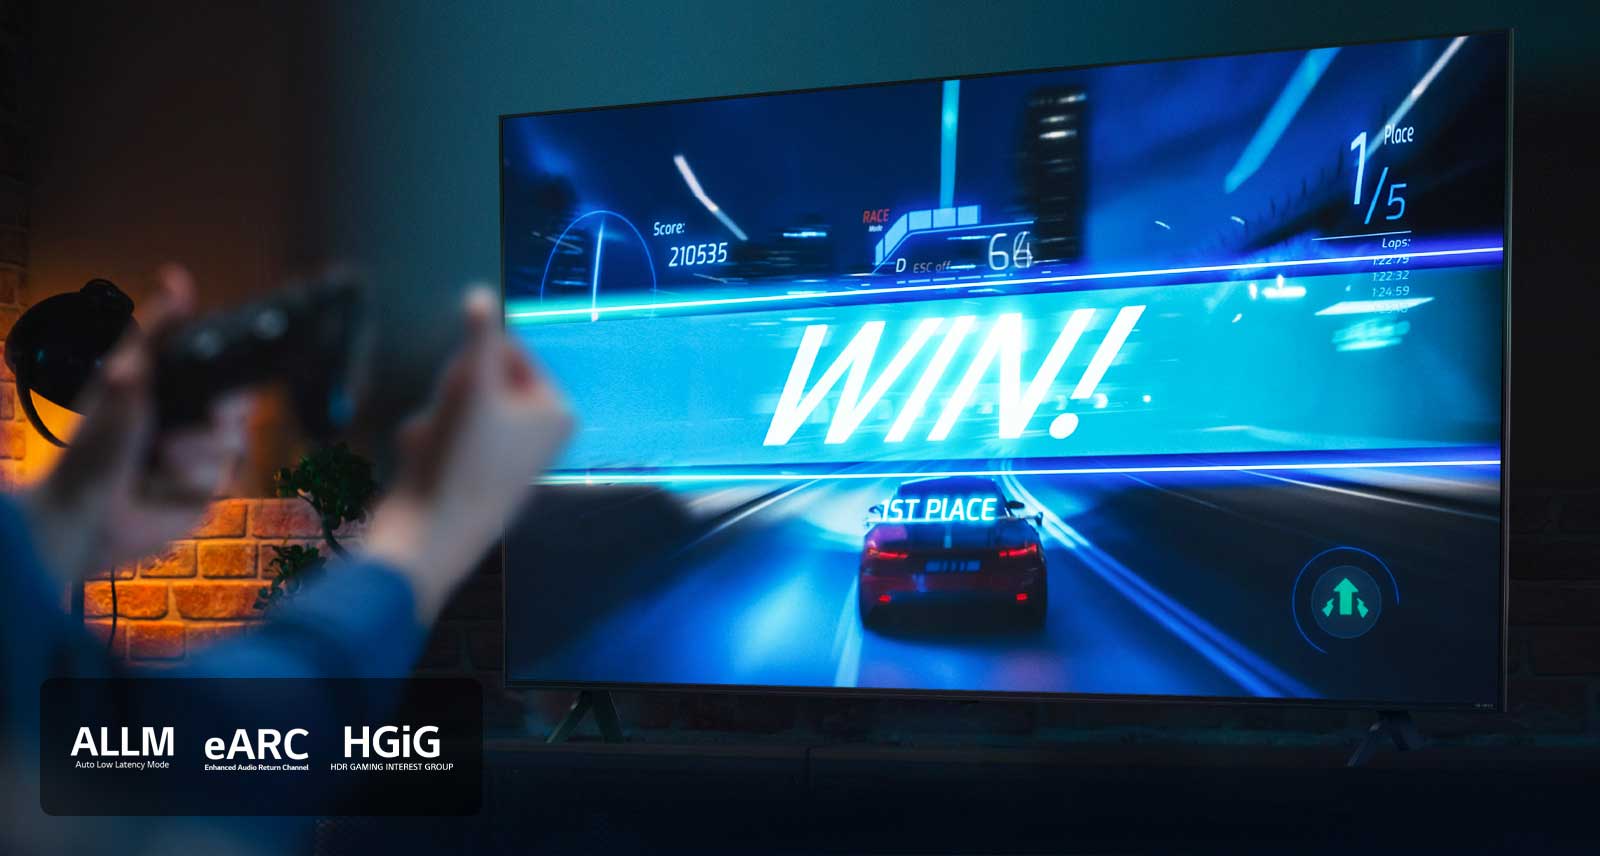 รูปภาพของ LG TV ที่แสดงเกมแข่งรถที่เส้นชัย โดยมีป้ายเขียนว่า 'ชนะ!' ขณะที่ผู้เล่นเกาะจอยสติ๊กของเกม โลโก้ ALLM, eARC, HGiG อยู่ที่มุมซ้ายล่าง